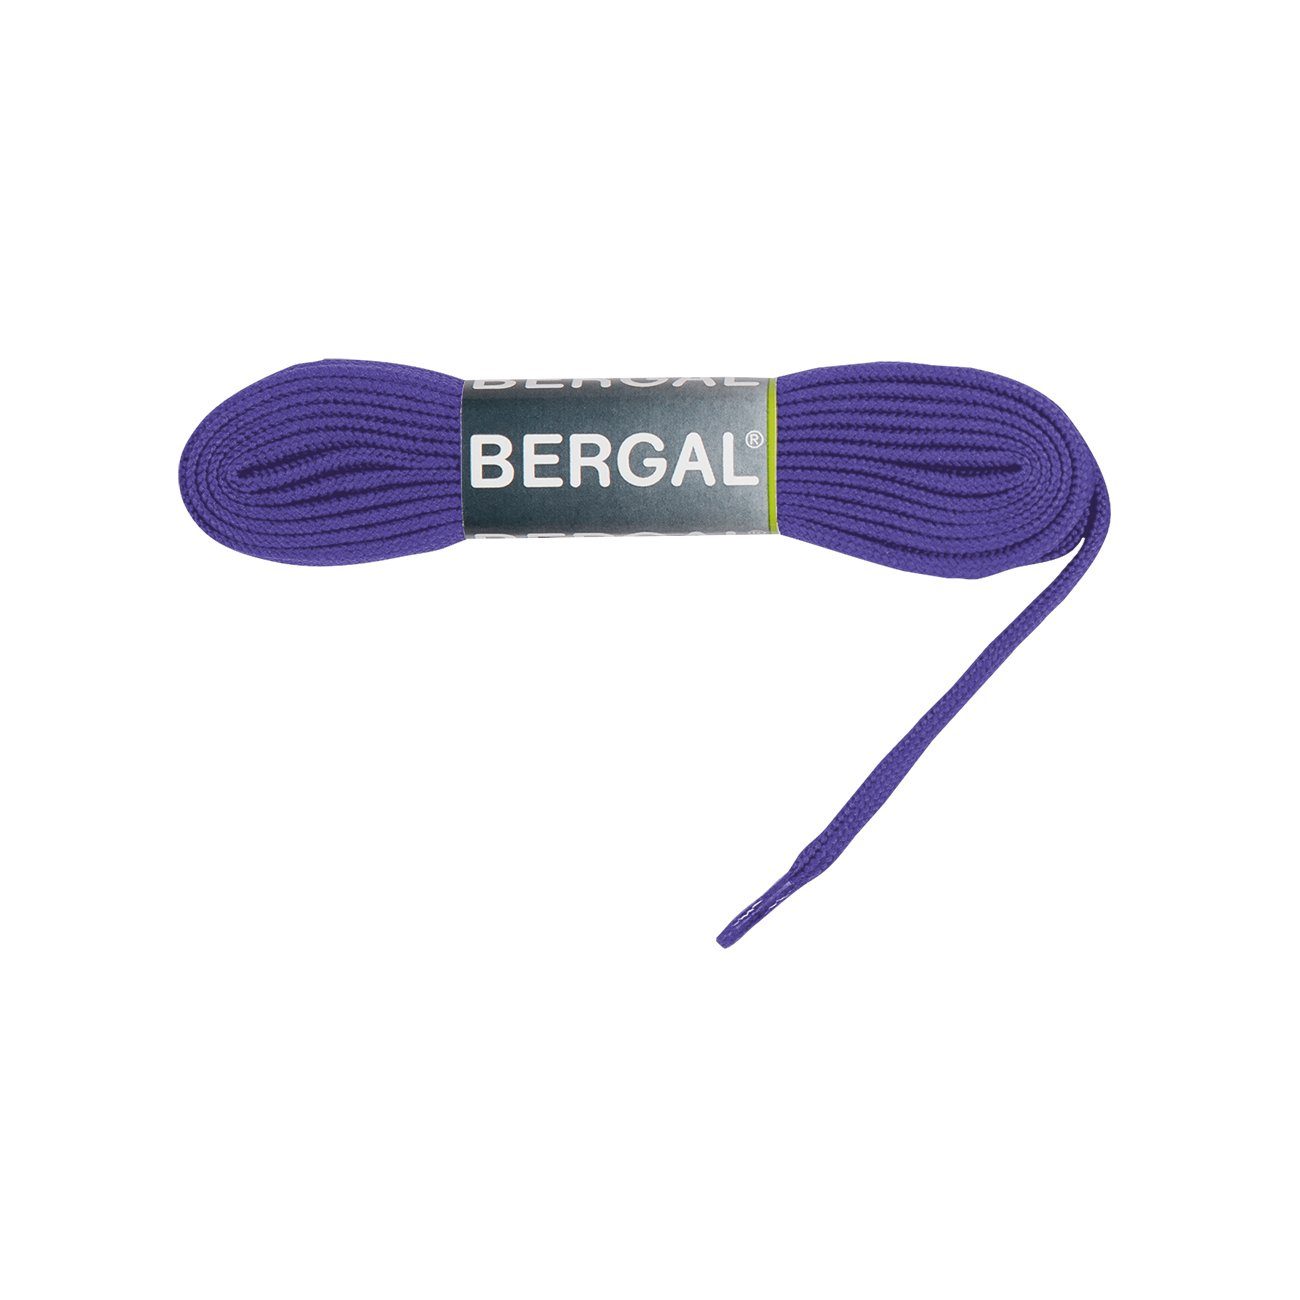 Bergal Schnürsenkel Sneaker Laces - Flach - 10 mm Breit Purple